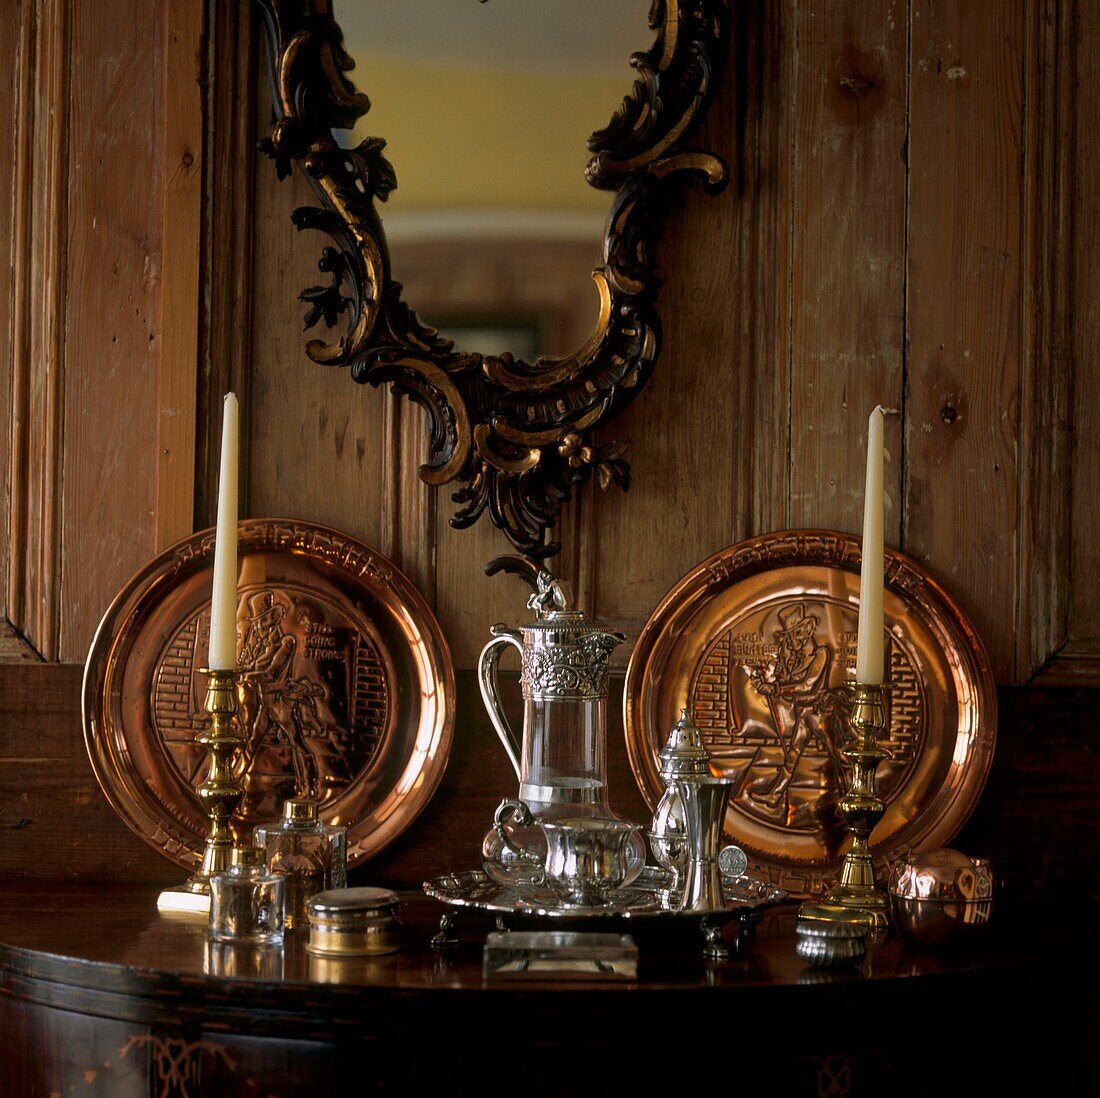 Antikes Silber- und Messinggeschirr auf Tischplatte mit Holzvertäfelung und verziertem Spiegel